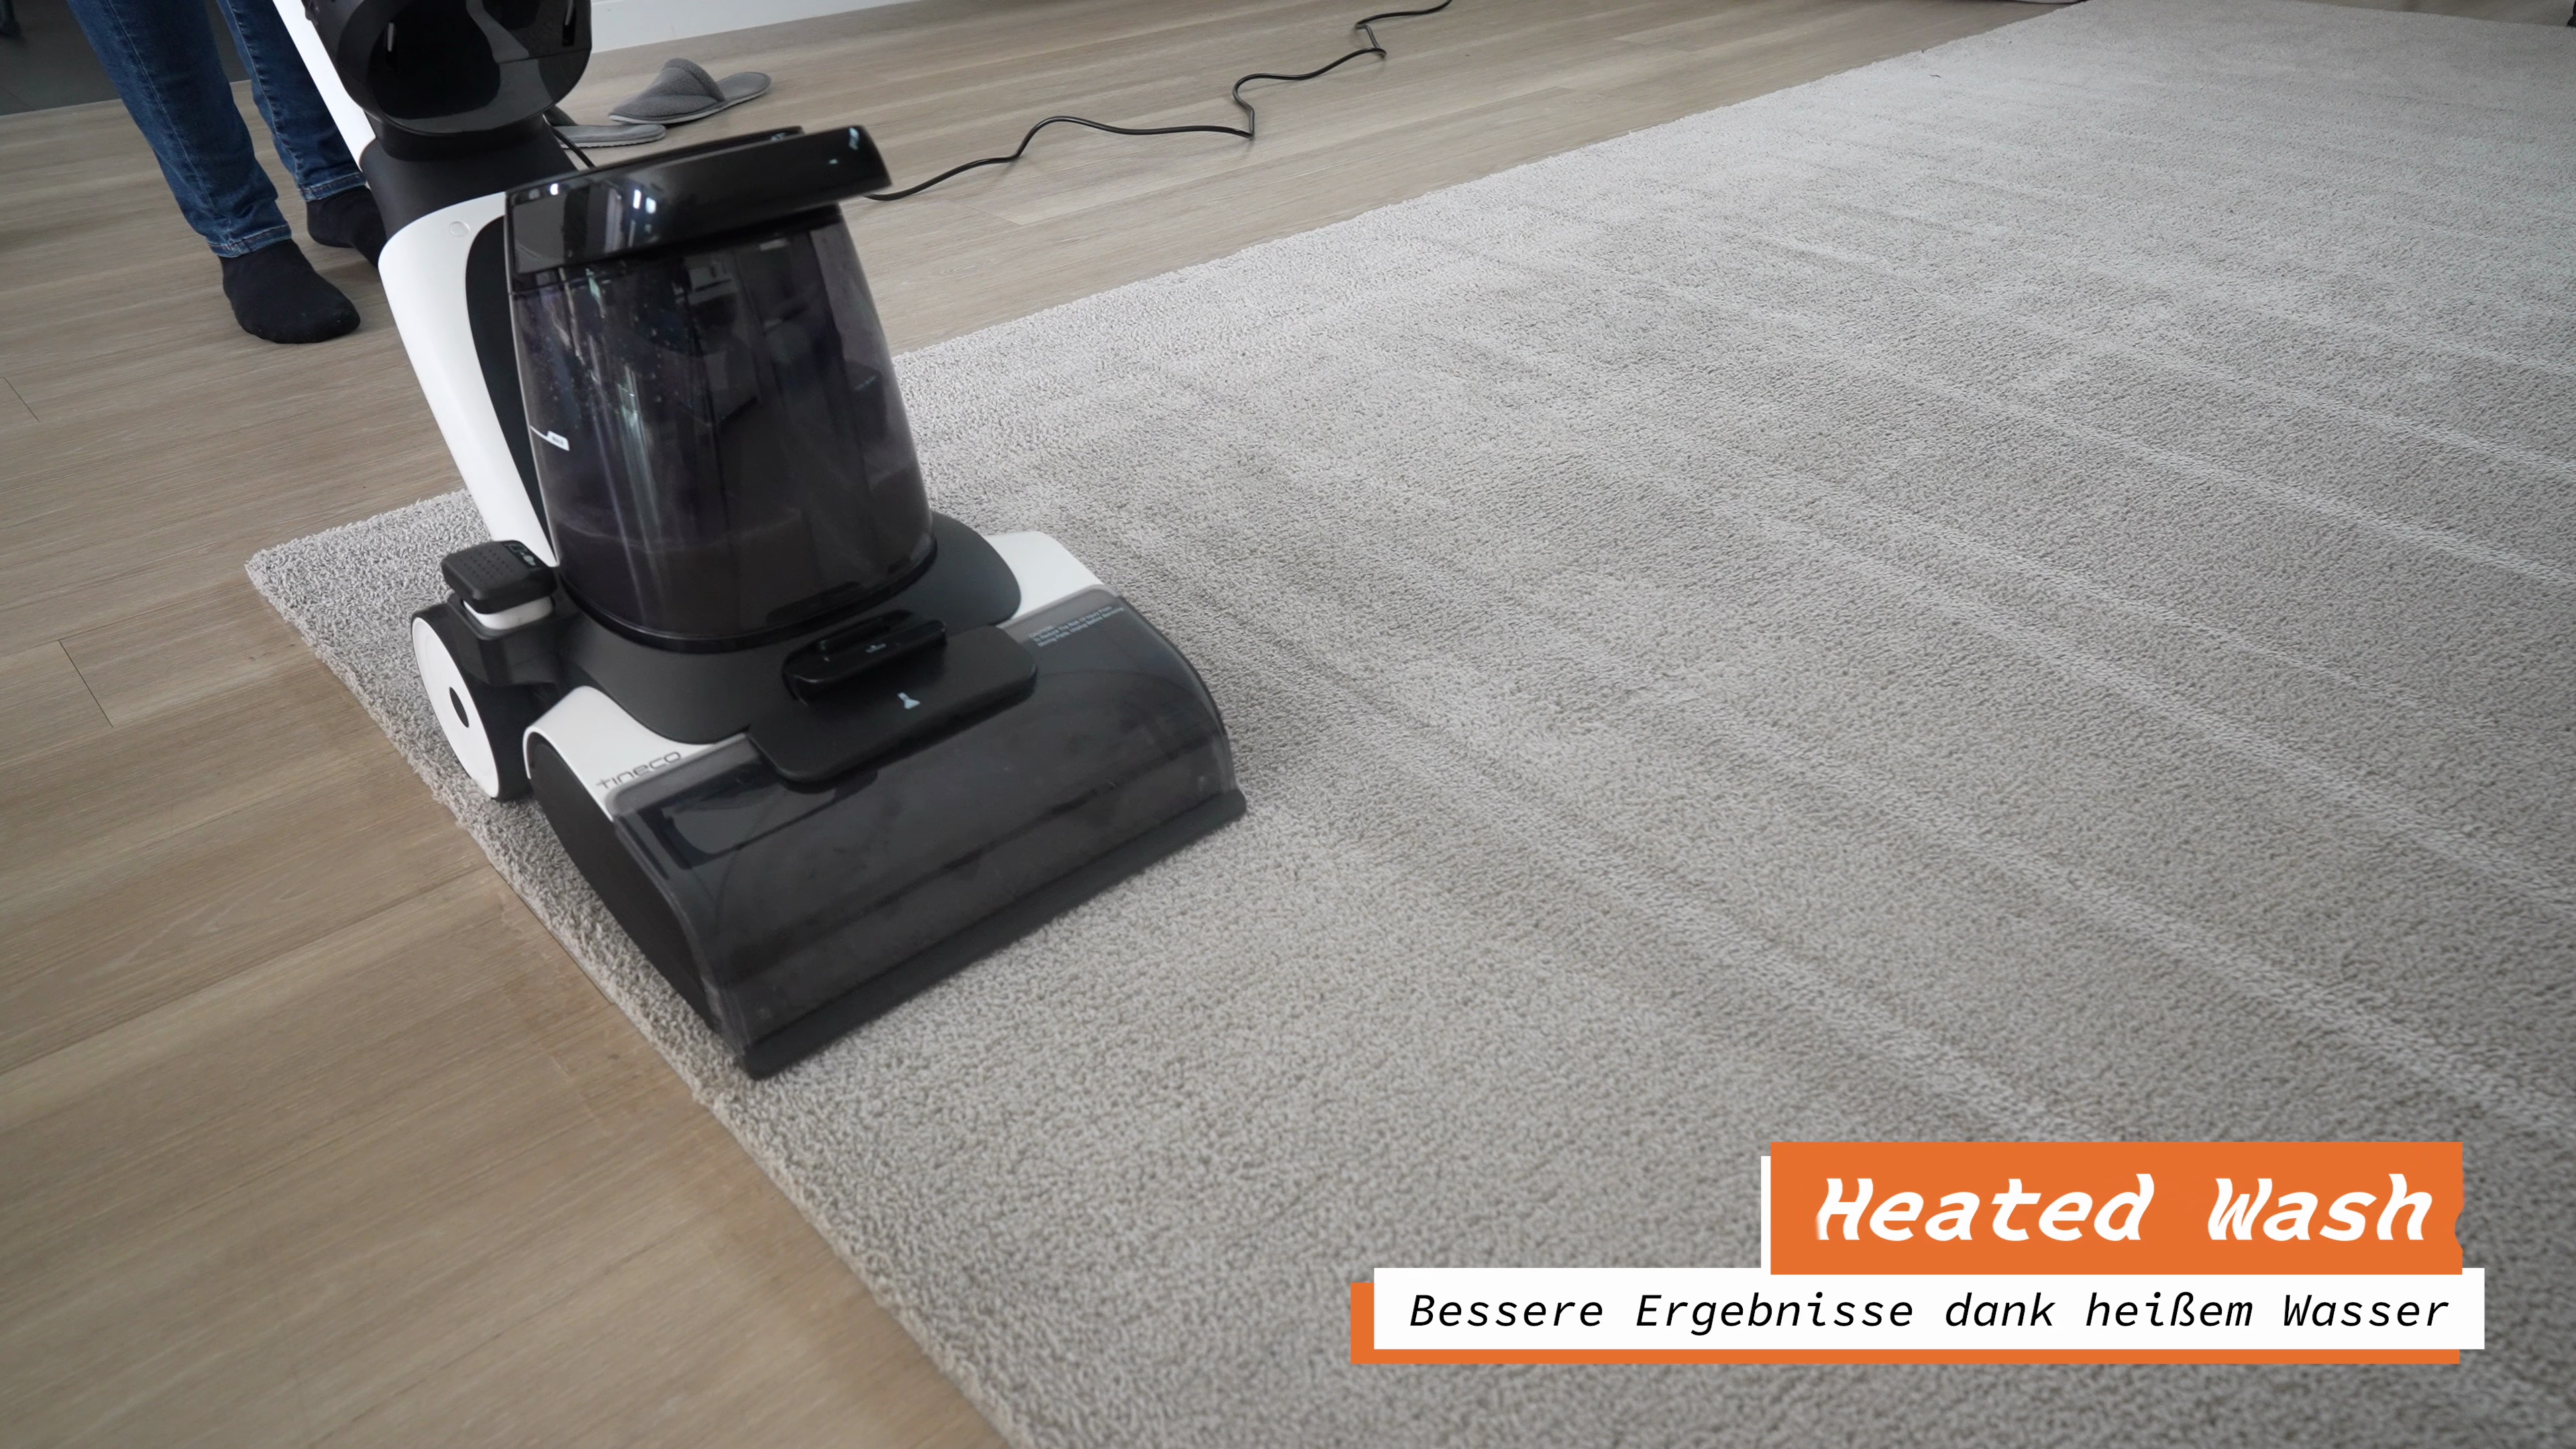 Tineco Carpet One Teppichreiniger Heated Wash Trocknungsfunktion